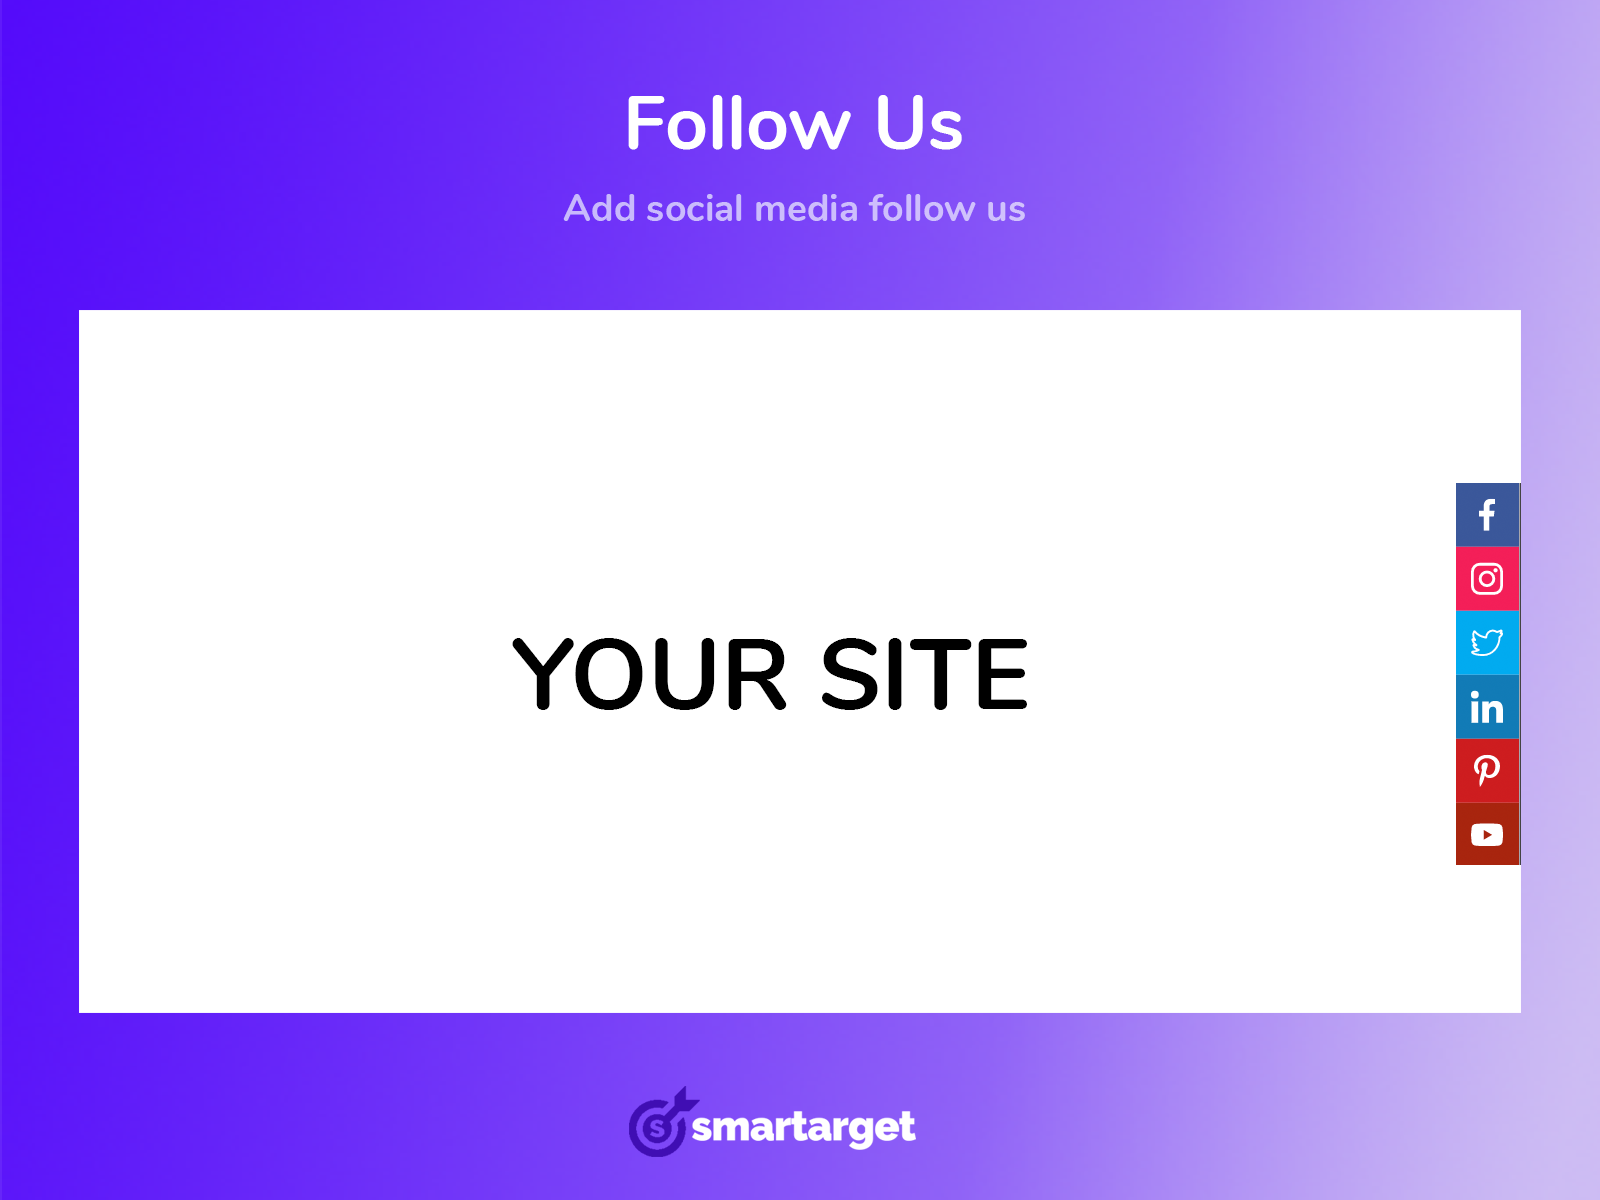 Smartarget - Social Follow Us Image